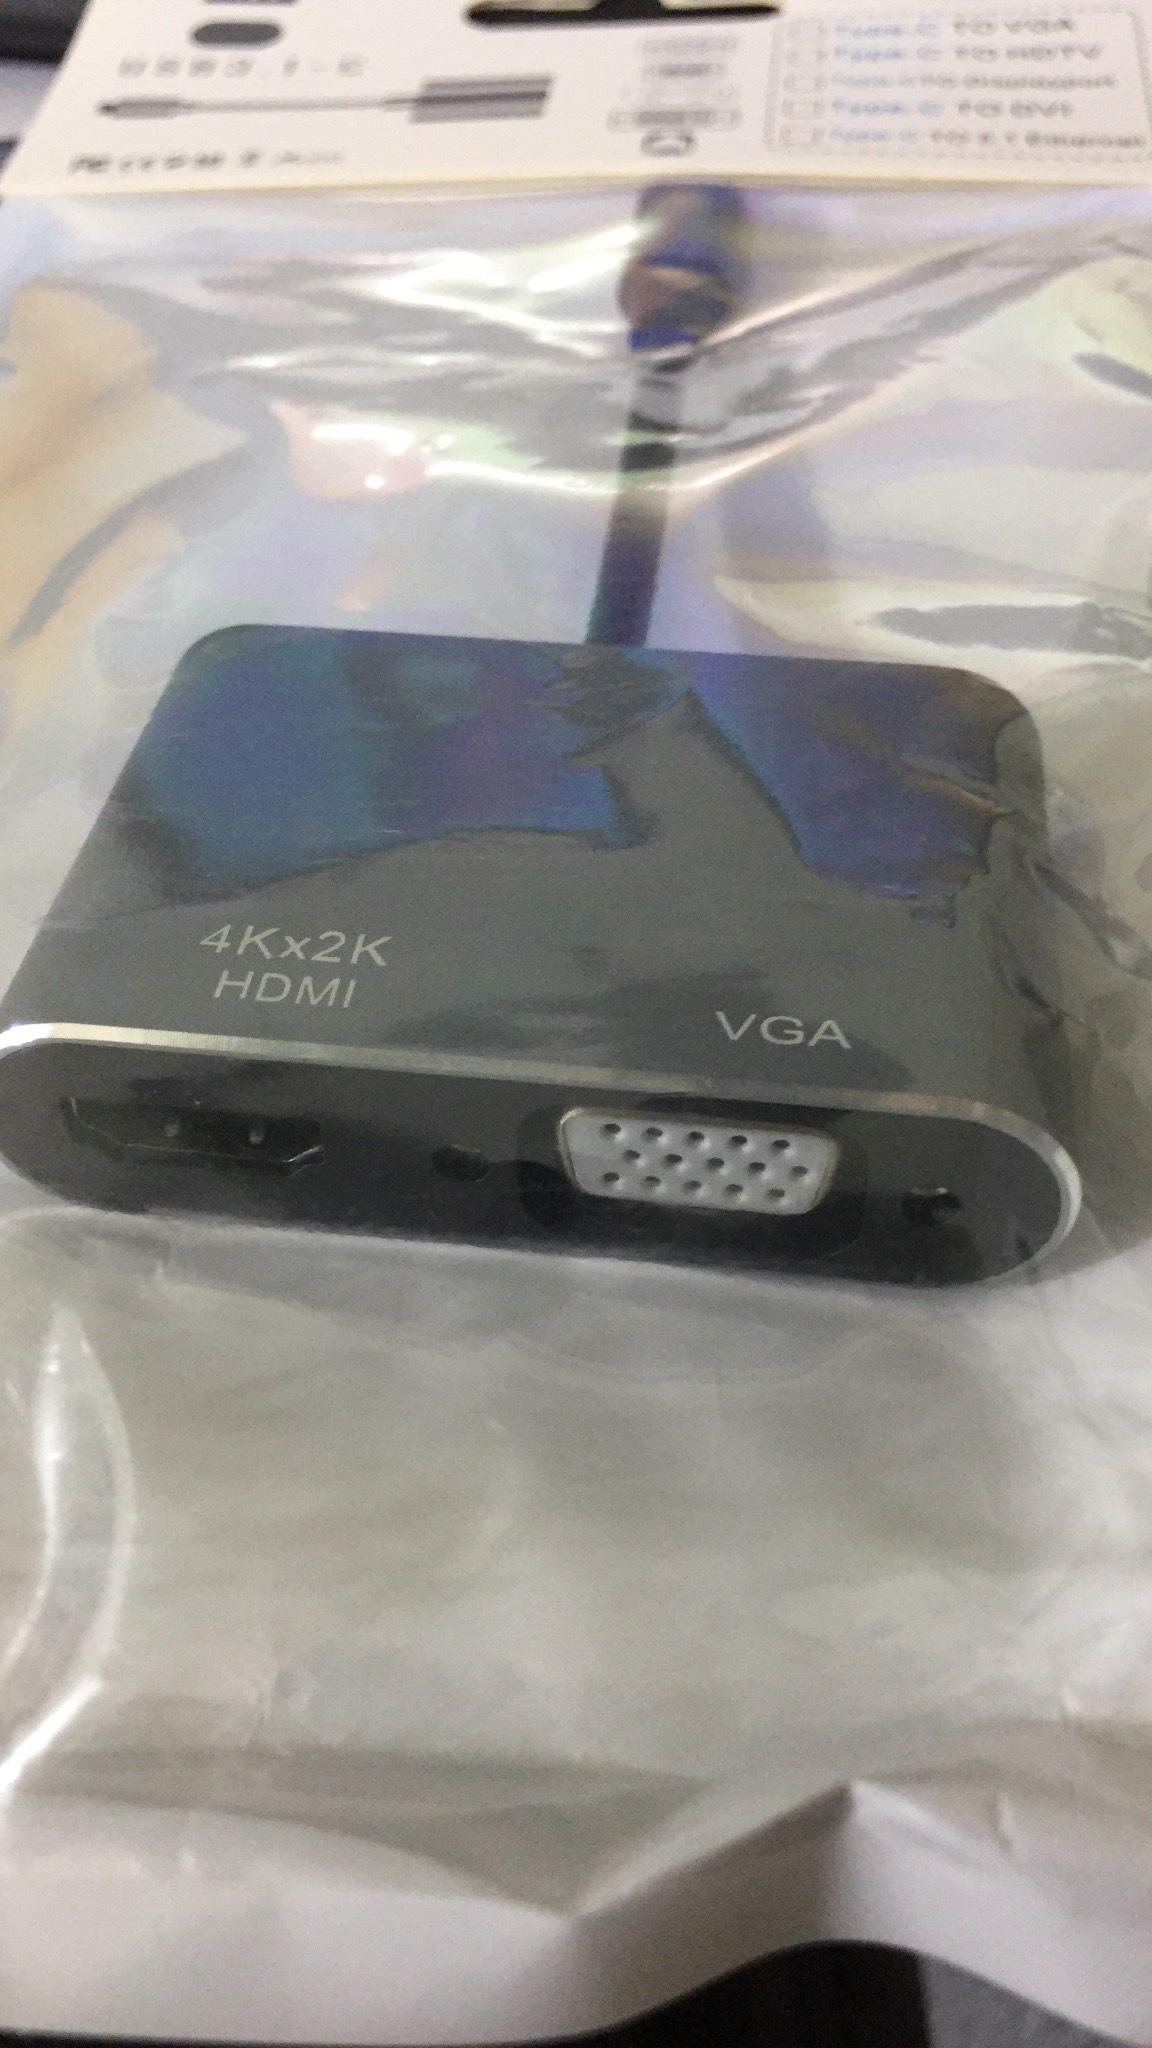 Cáp chuyển đổi USB Type C sang HDMI và VGA (USB C to HDMI , VGA)